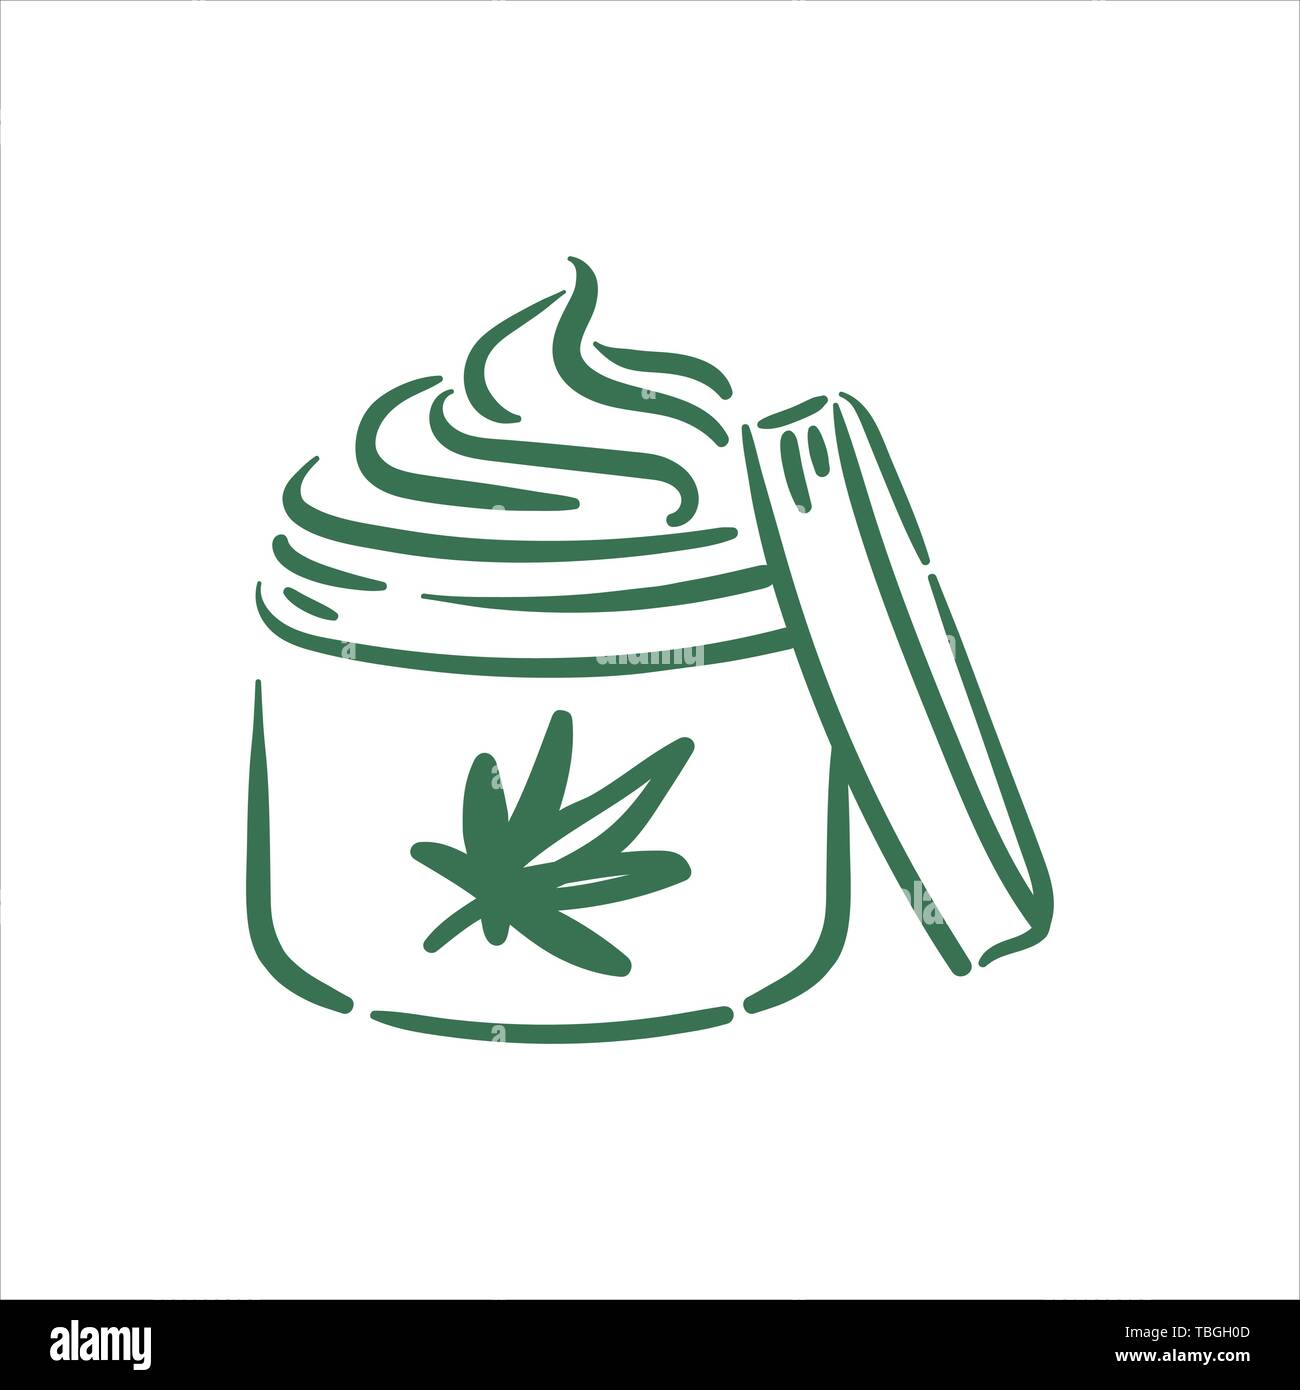 Vektor Hand gezeichnet Cannabis creme Abbildung auf weißem Hintergrund Stock Vektor